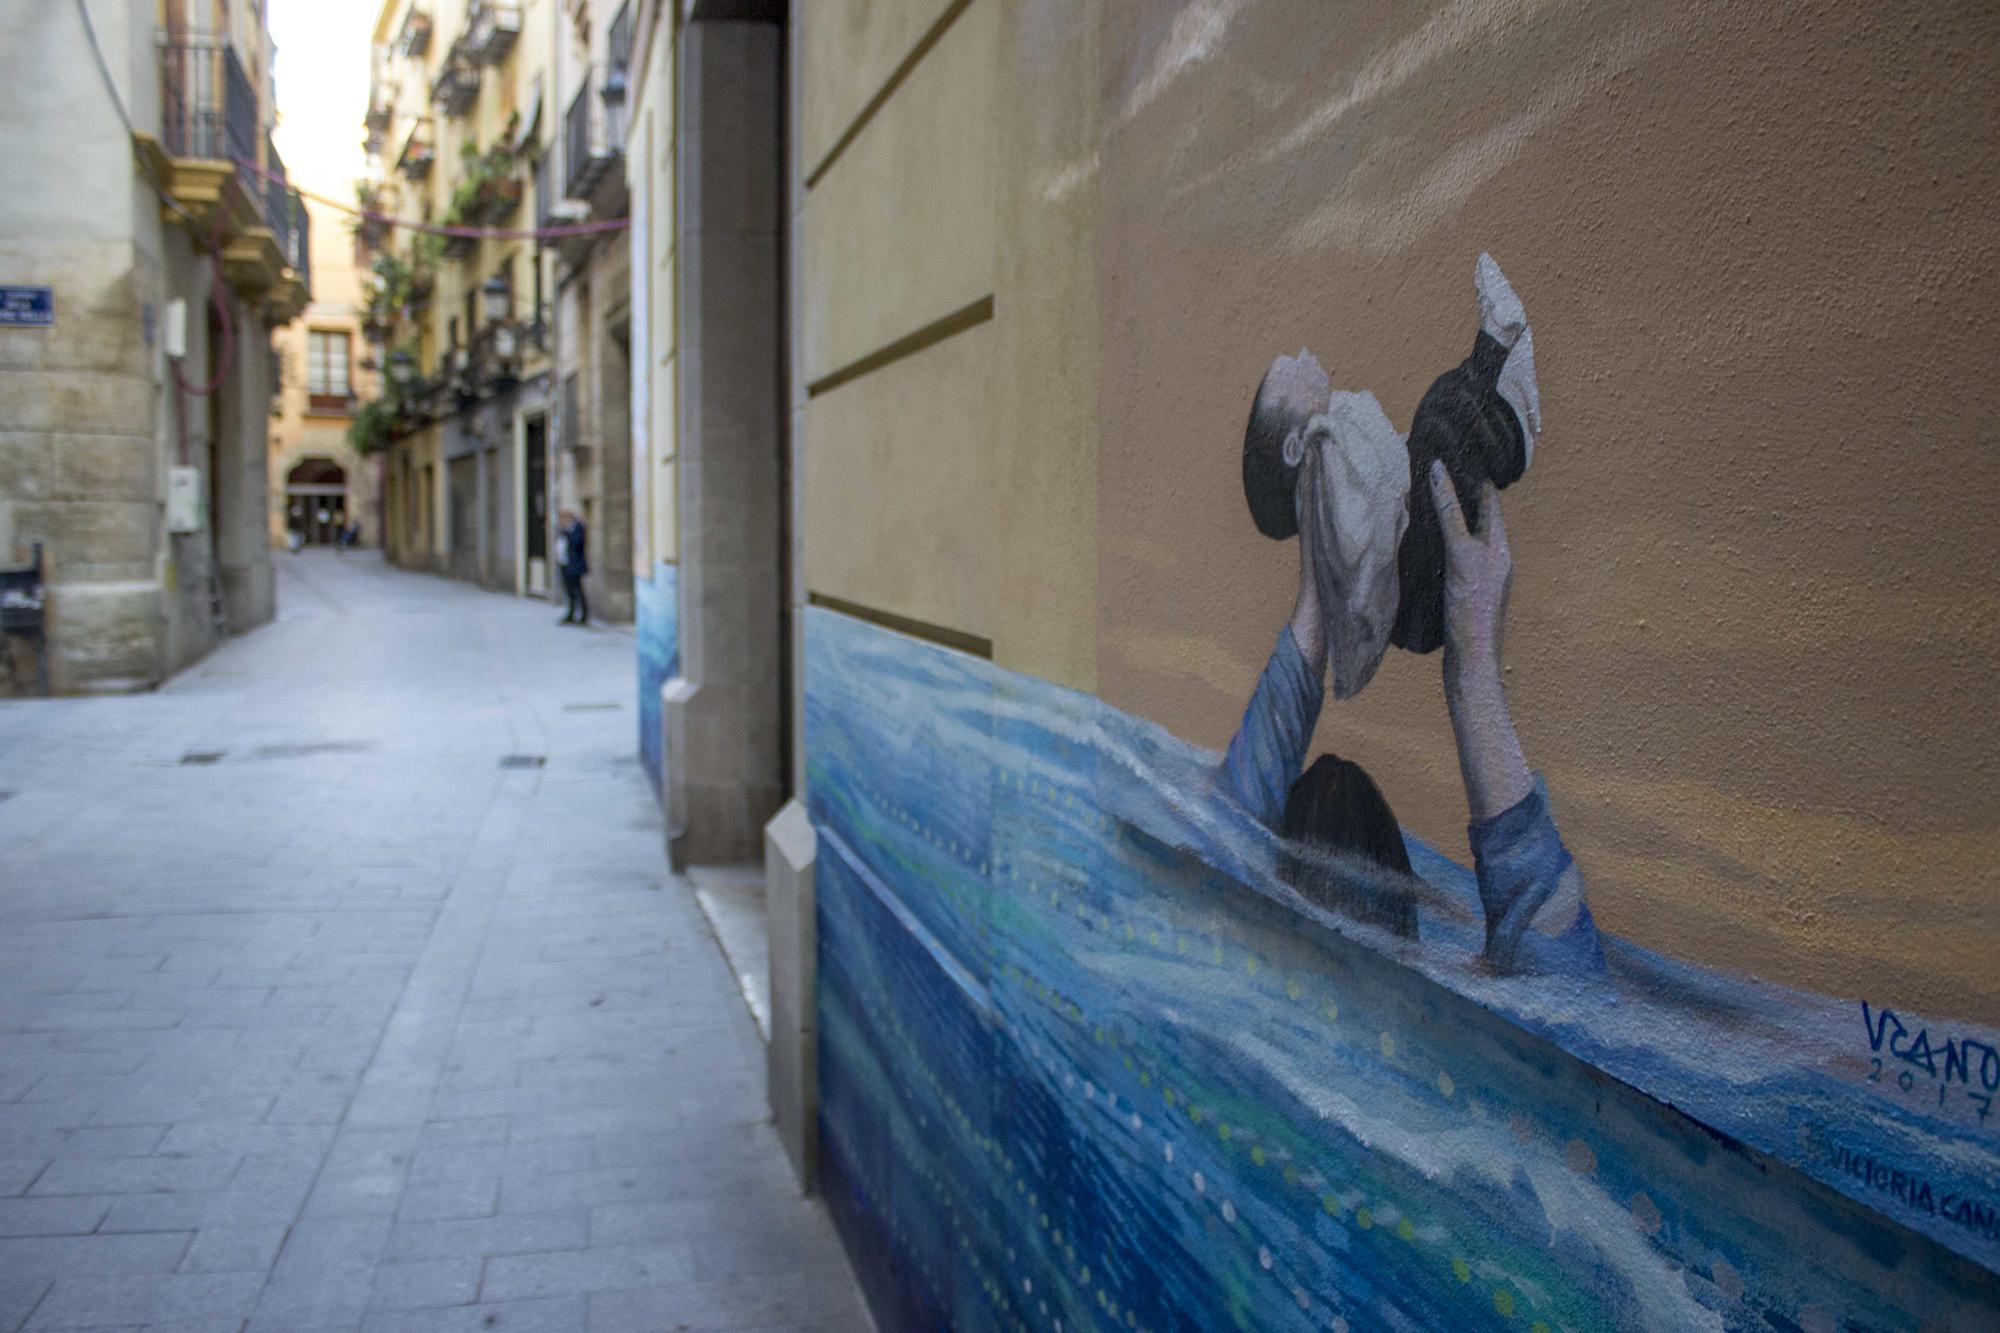 L_artista Victoria Cano commemora el seixanta aniversari de la riuada amb esta pintura ubicada a la cantonada entre els carrers de la Mare Vella i Portal Valldigna del barri de Ciutat Vella